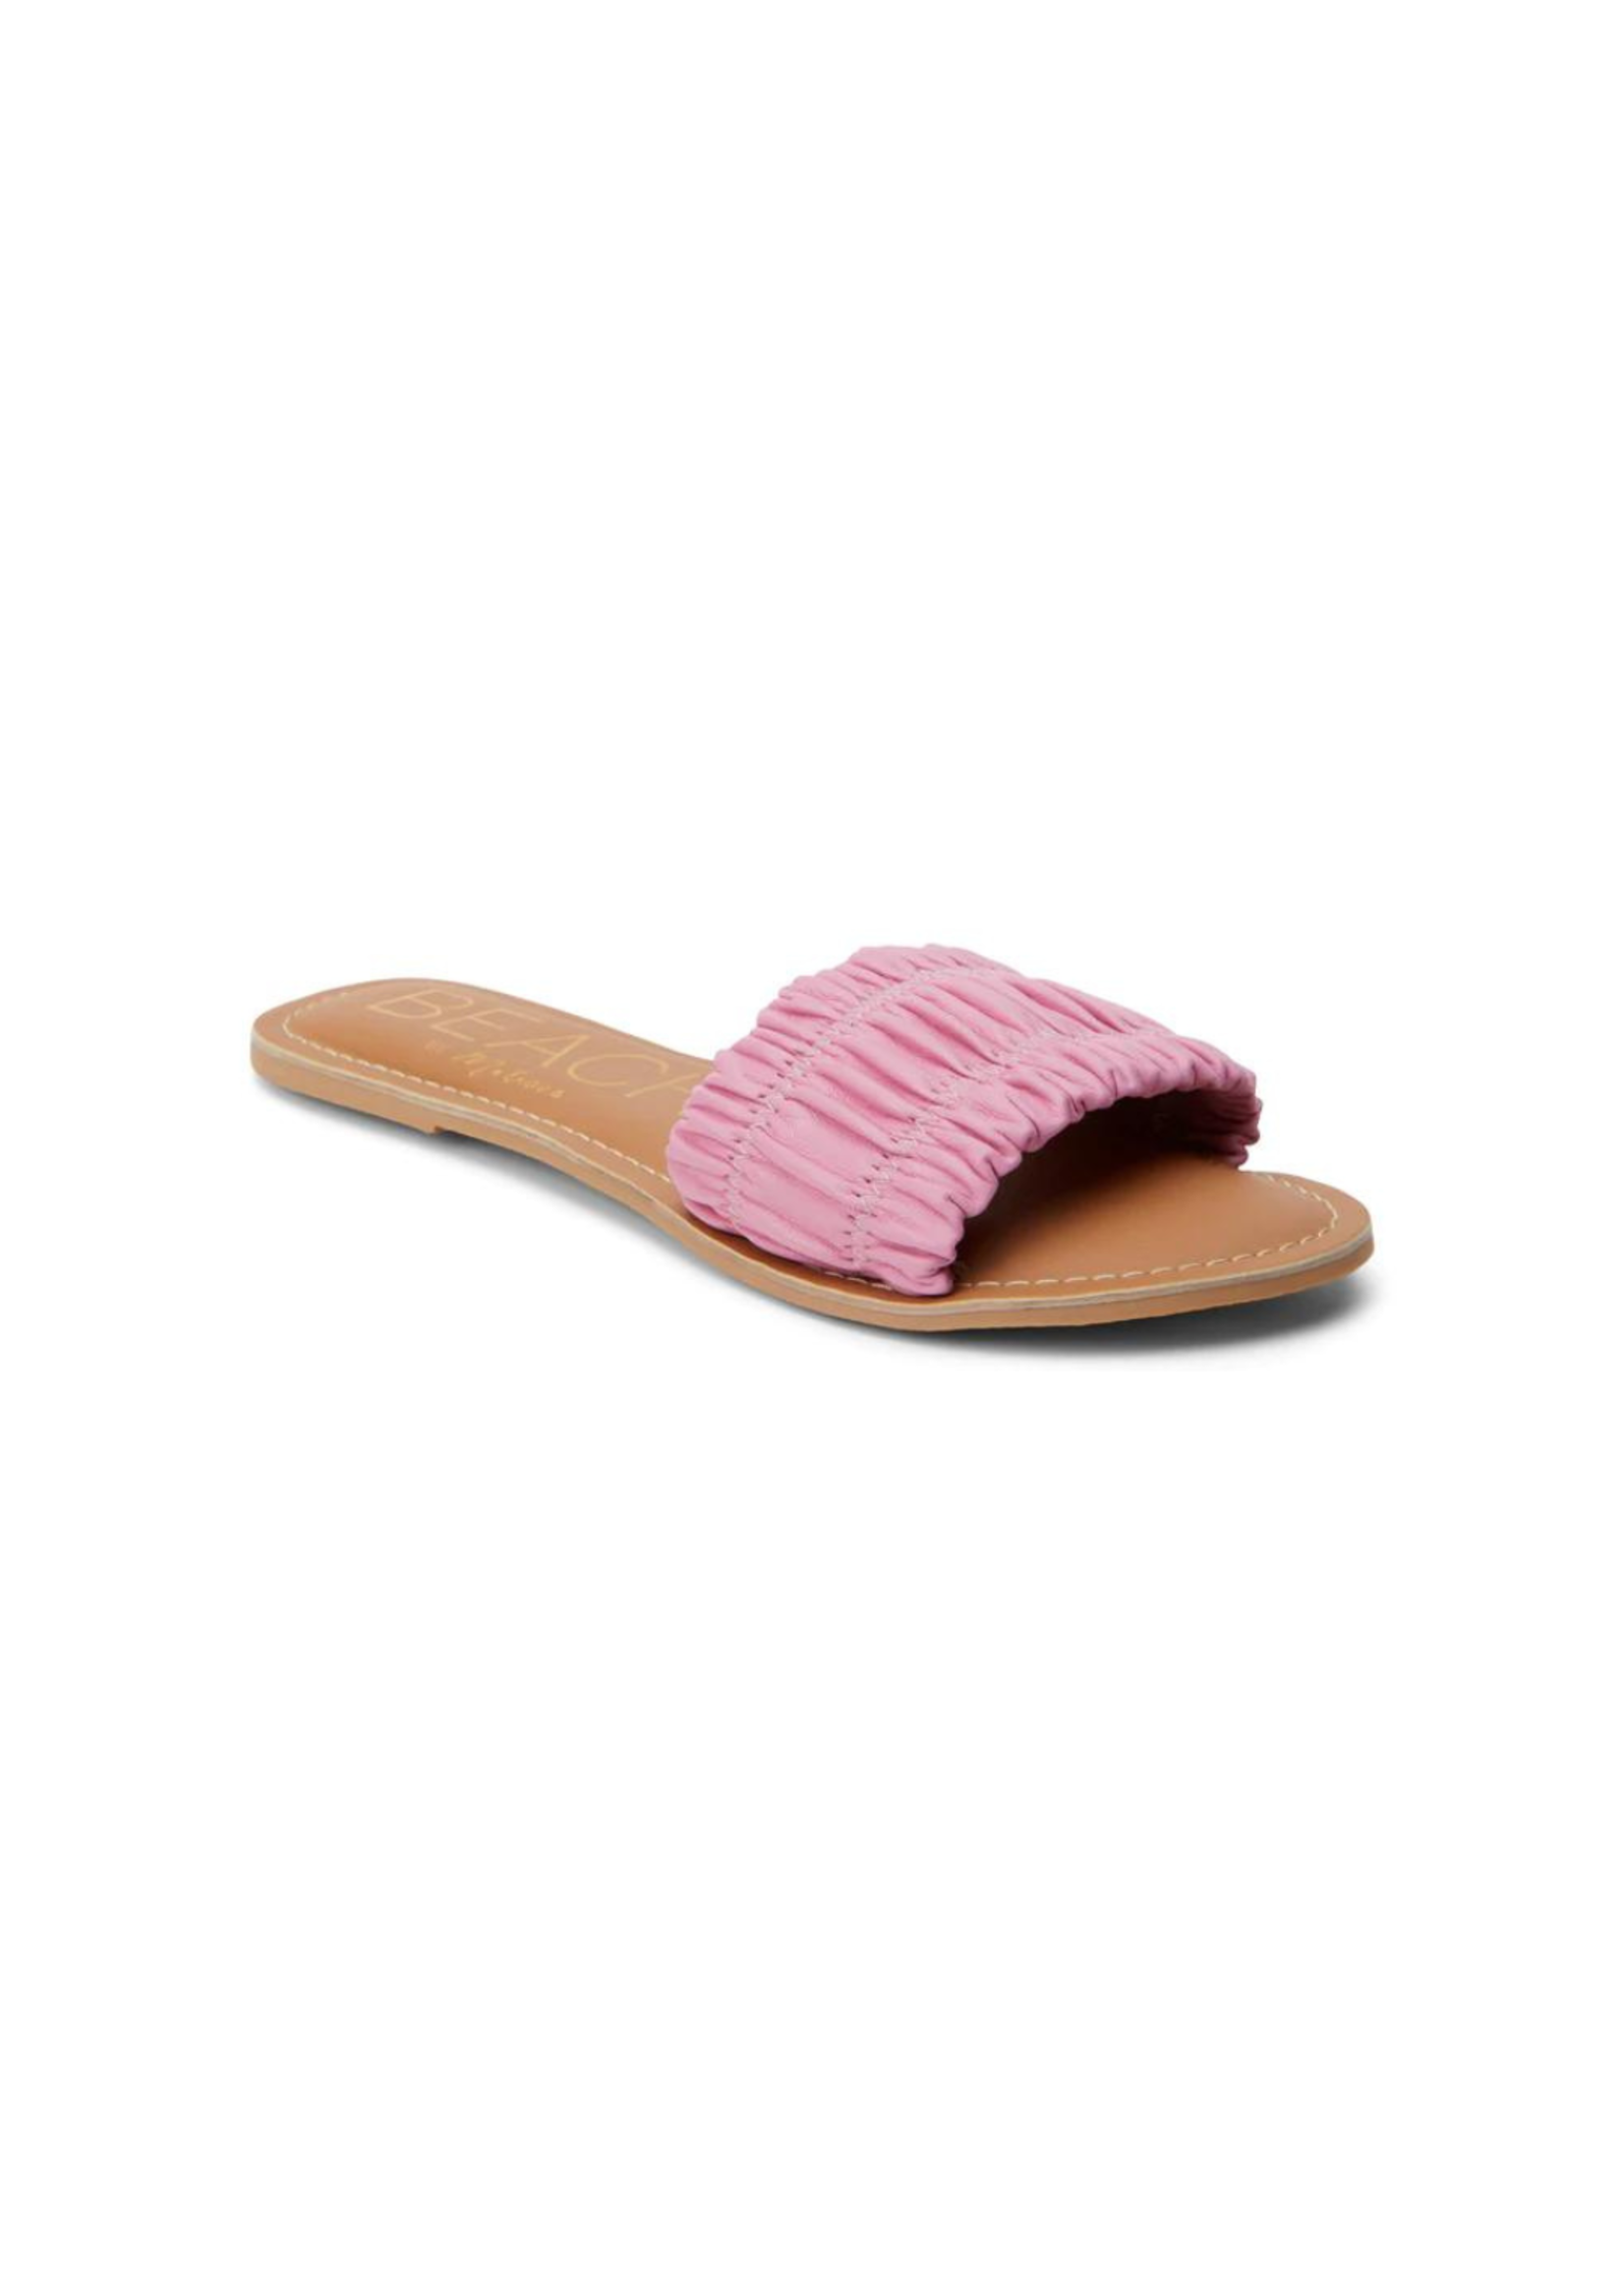 Matisse Footwear Channel Slide